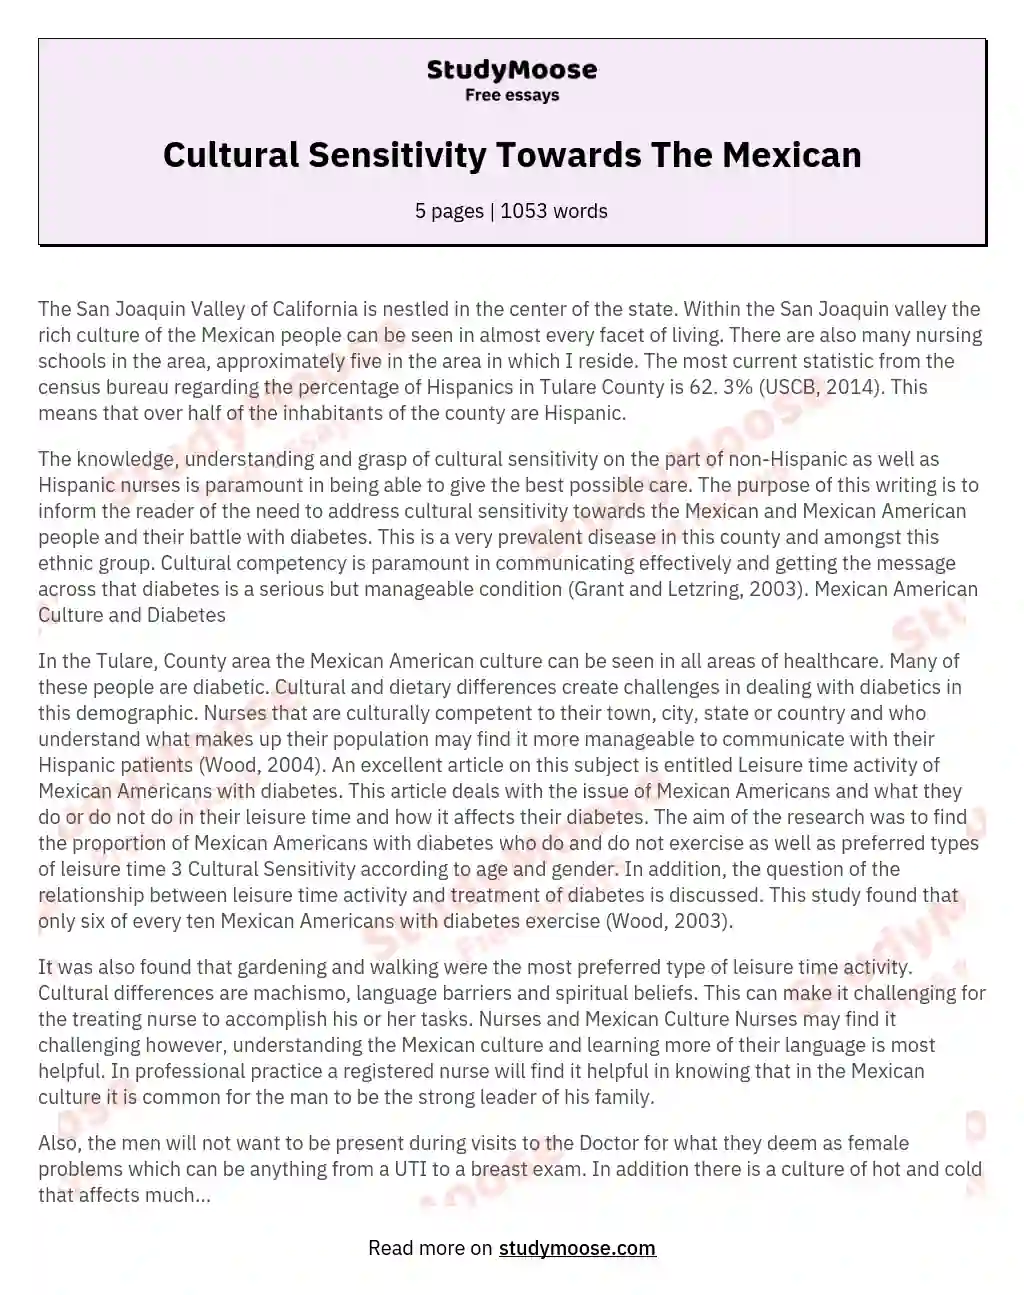 Cultural Sensitivity Towards The Mexican essay